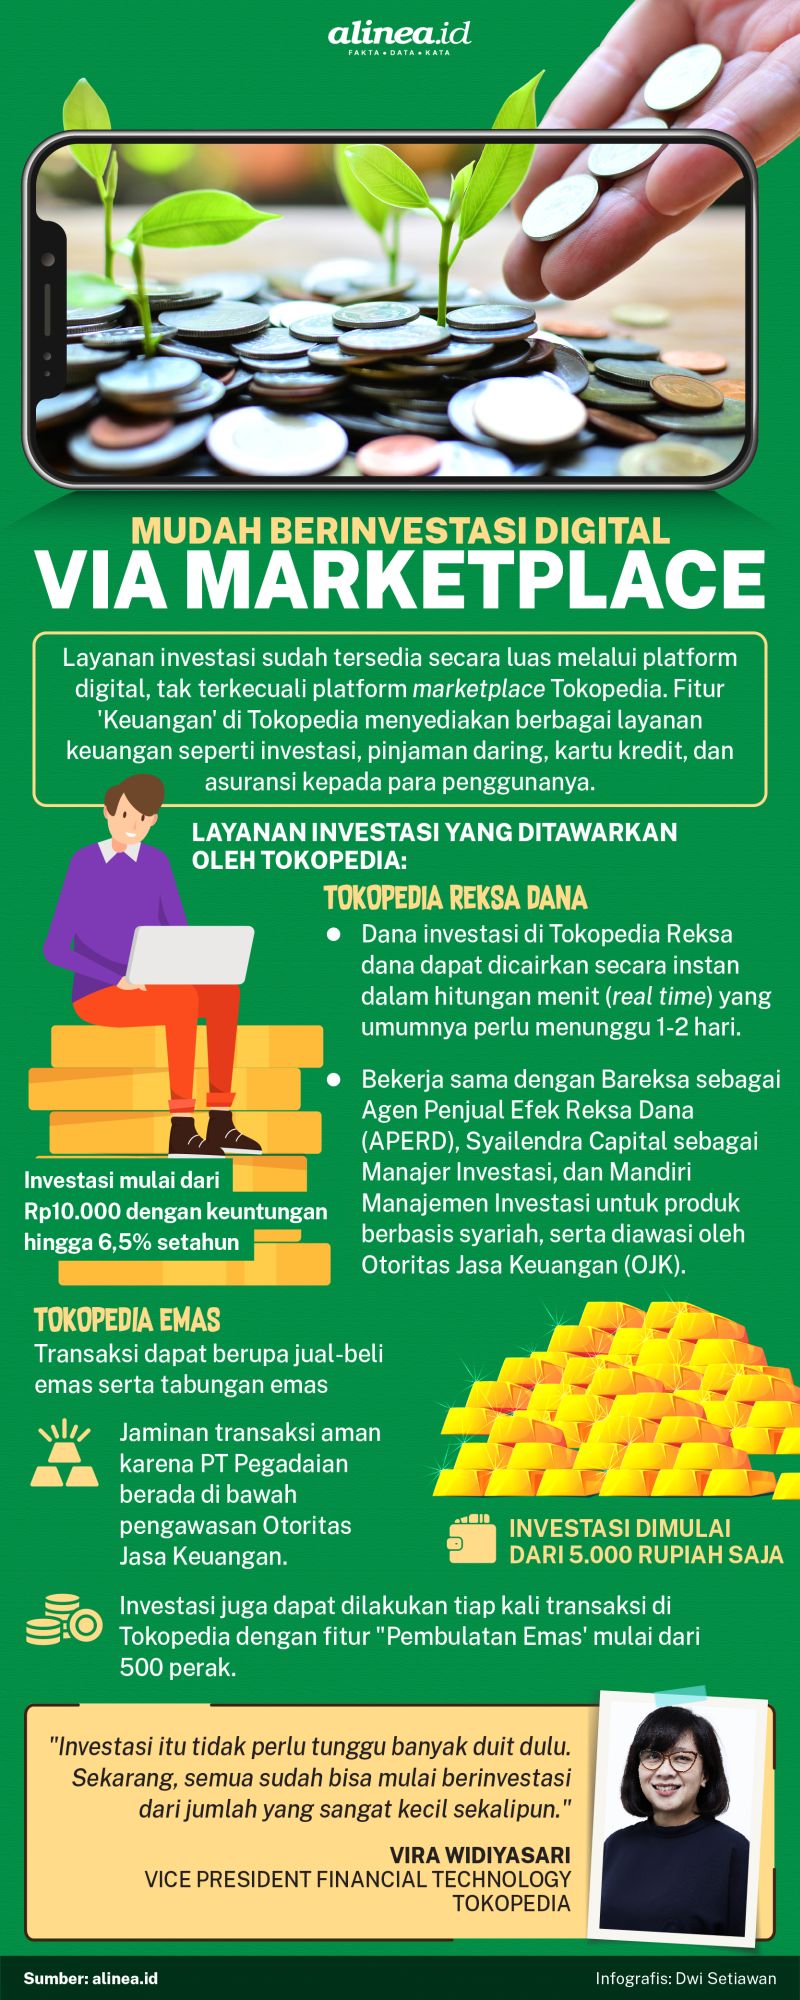 Infografik mudah berinvestasi digital. Alinea.id/Dwi Setiawan. 